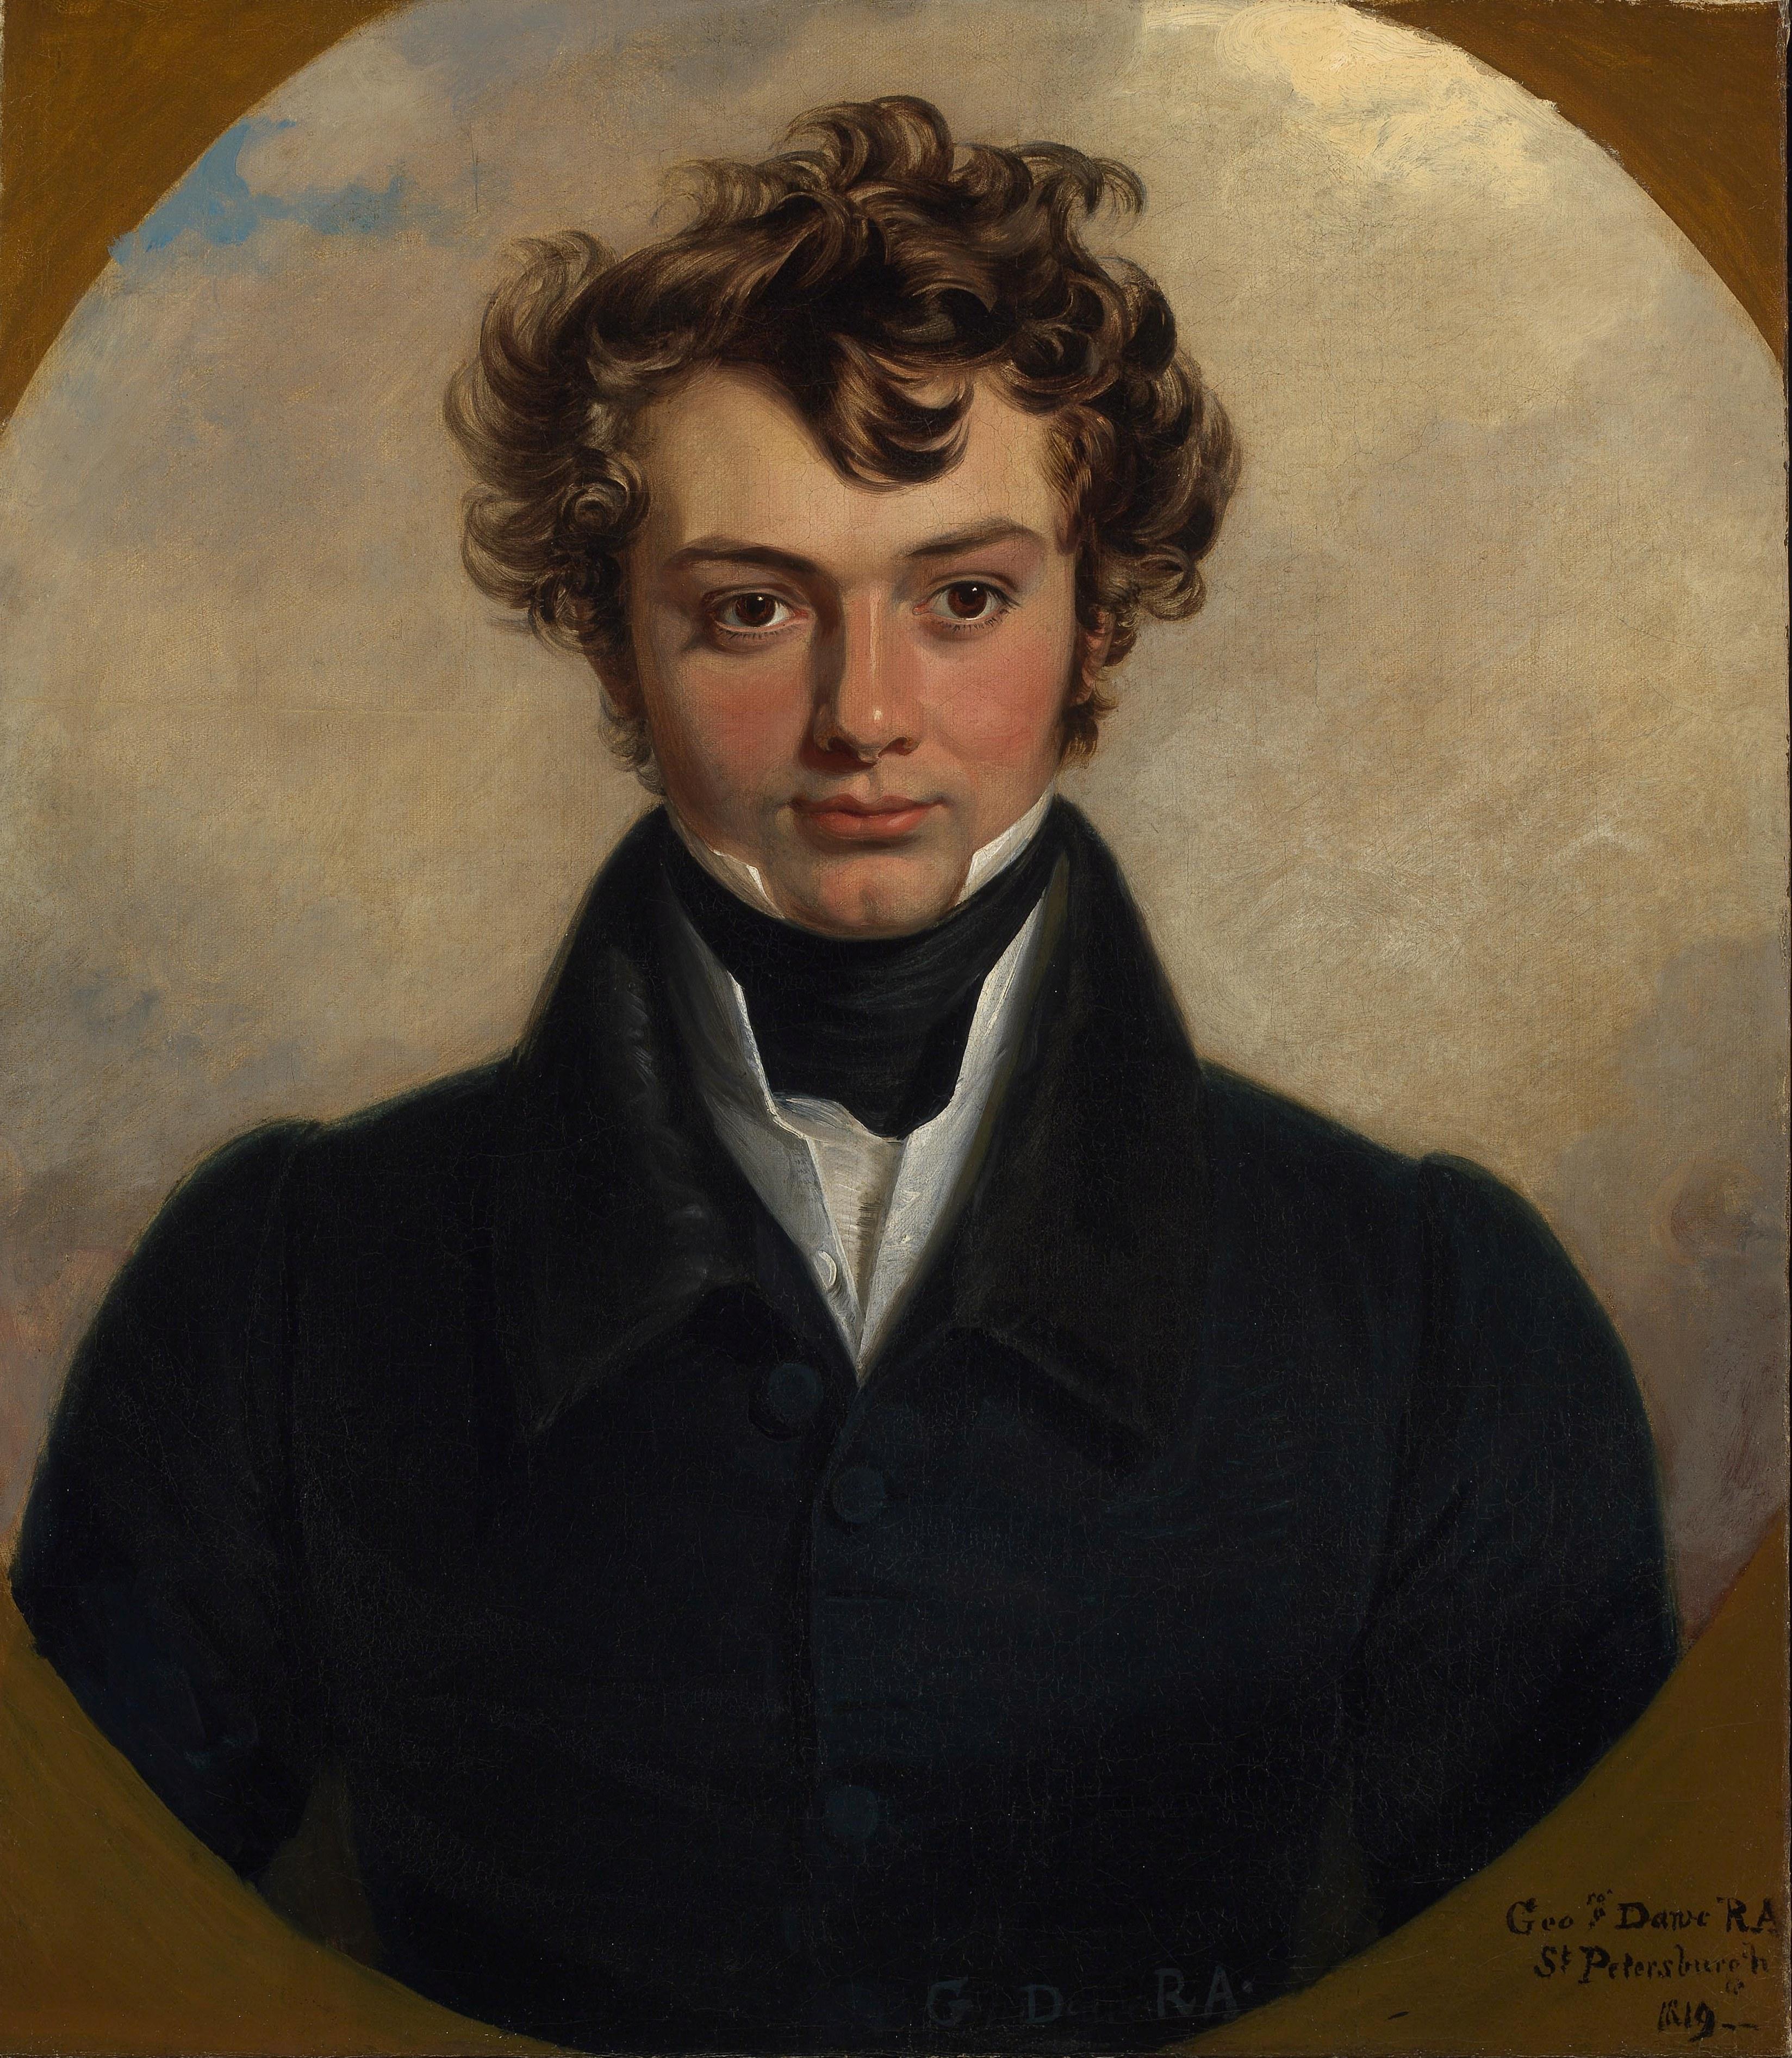 19th century portrait painted in St Petersburg in 1819 - Painting by George Dawe